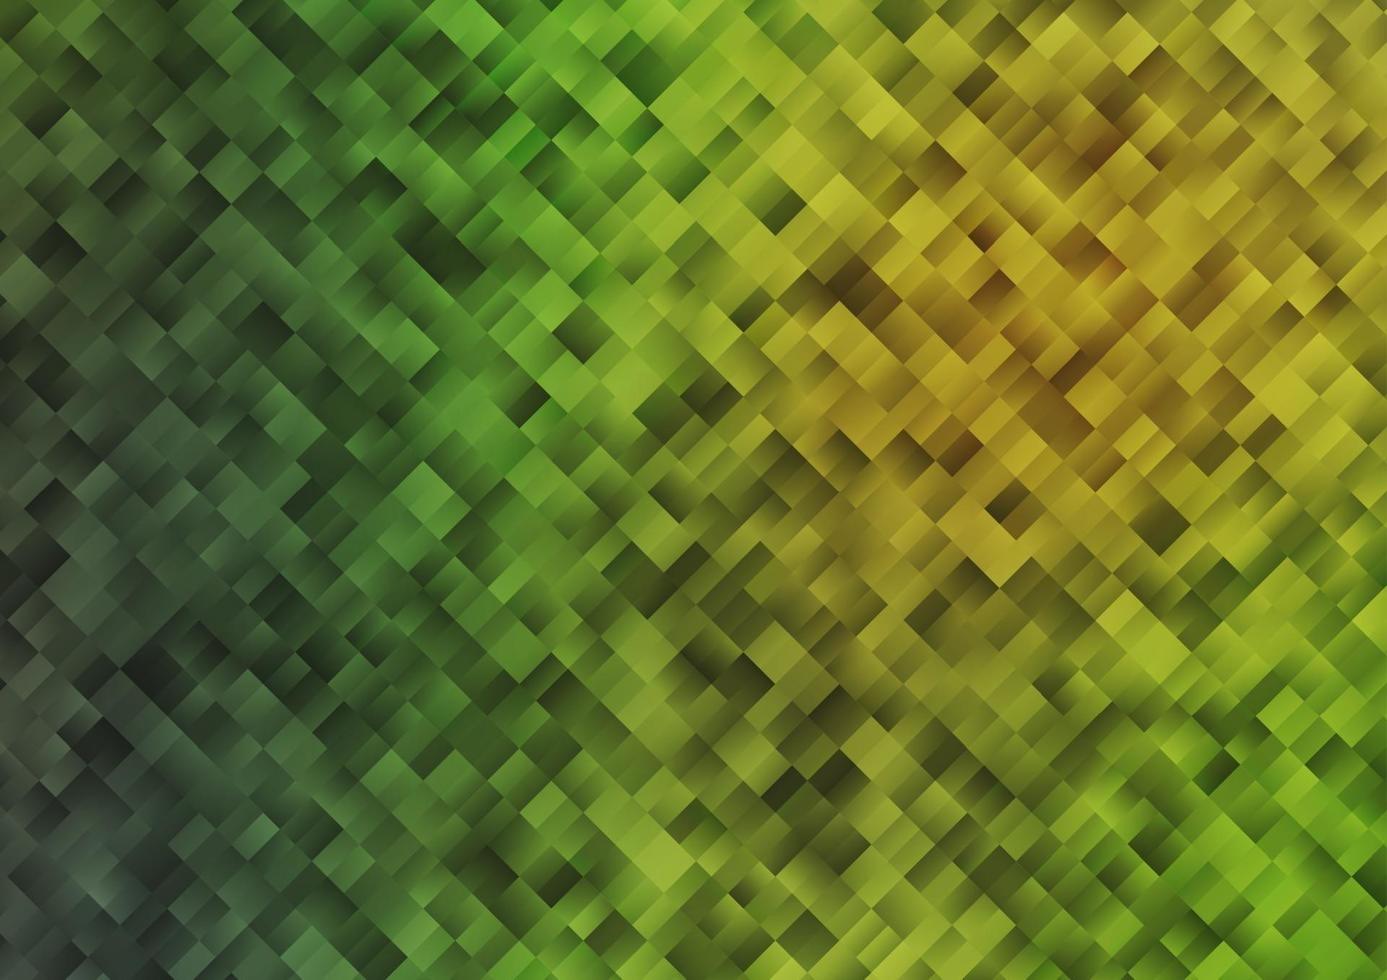 toile de fond de vecteur vert clair et jaune avec des rectangles, des carrés.